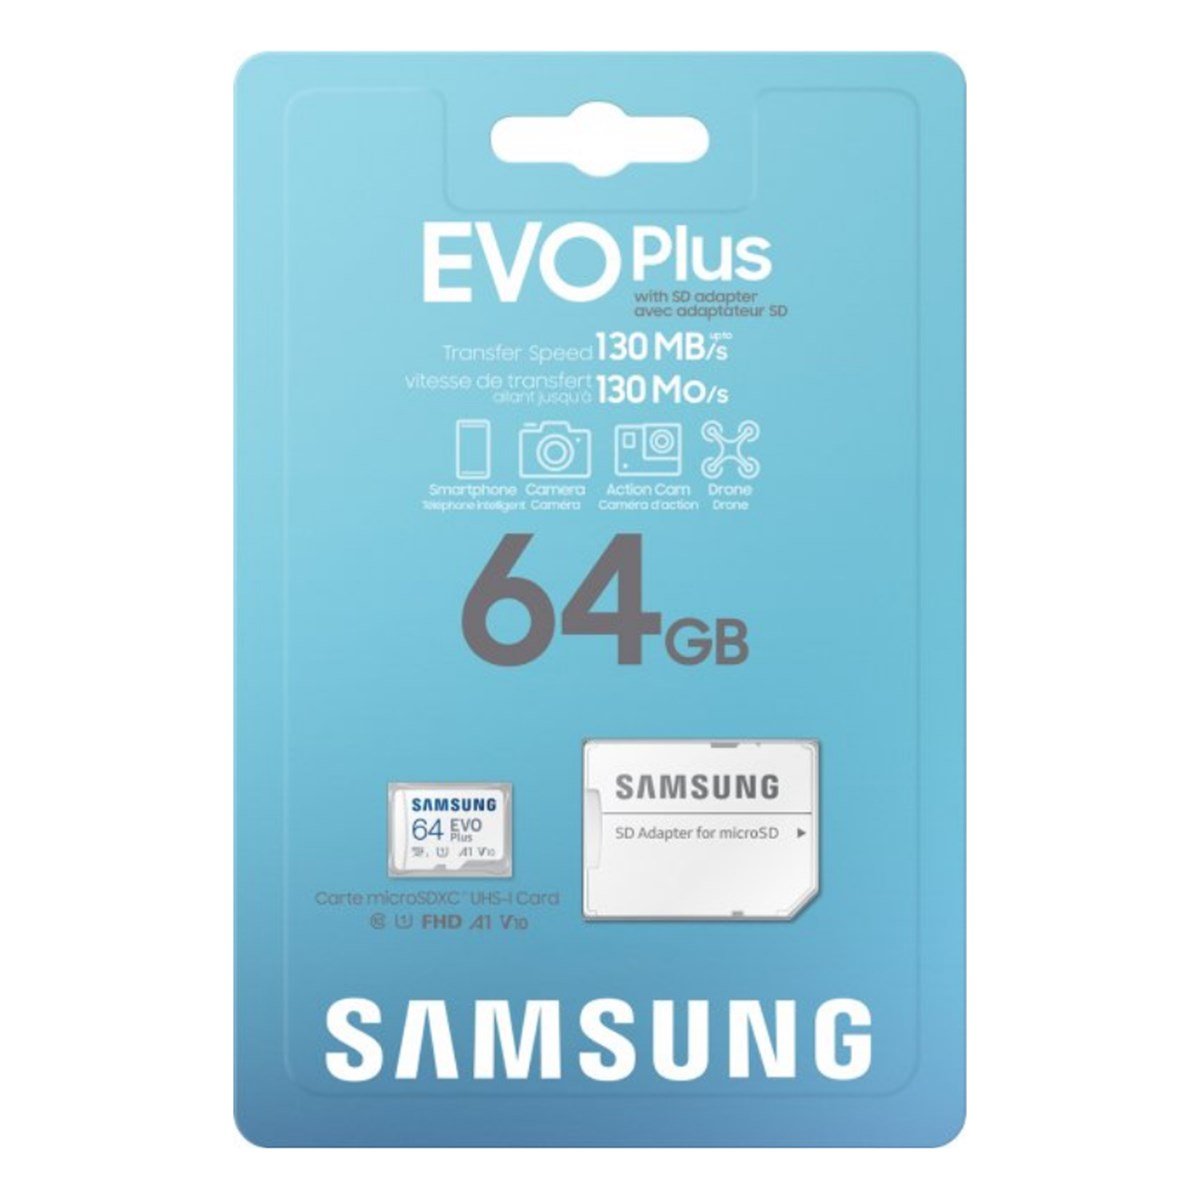 Samsung EVO Plus 130 MB/s 64 GB Hafıza Kartı